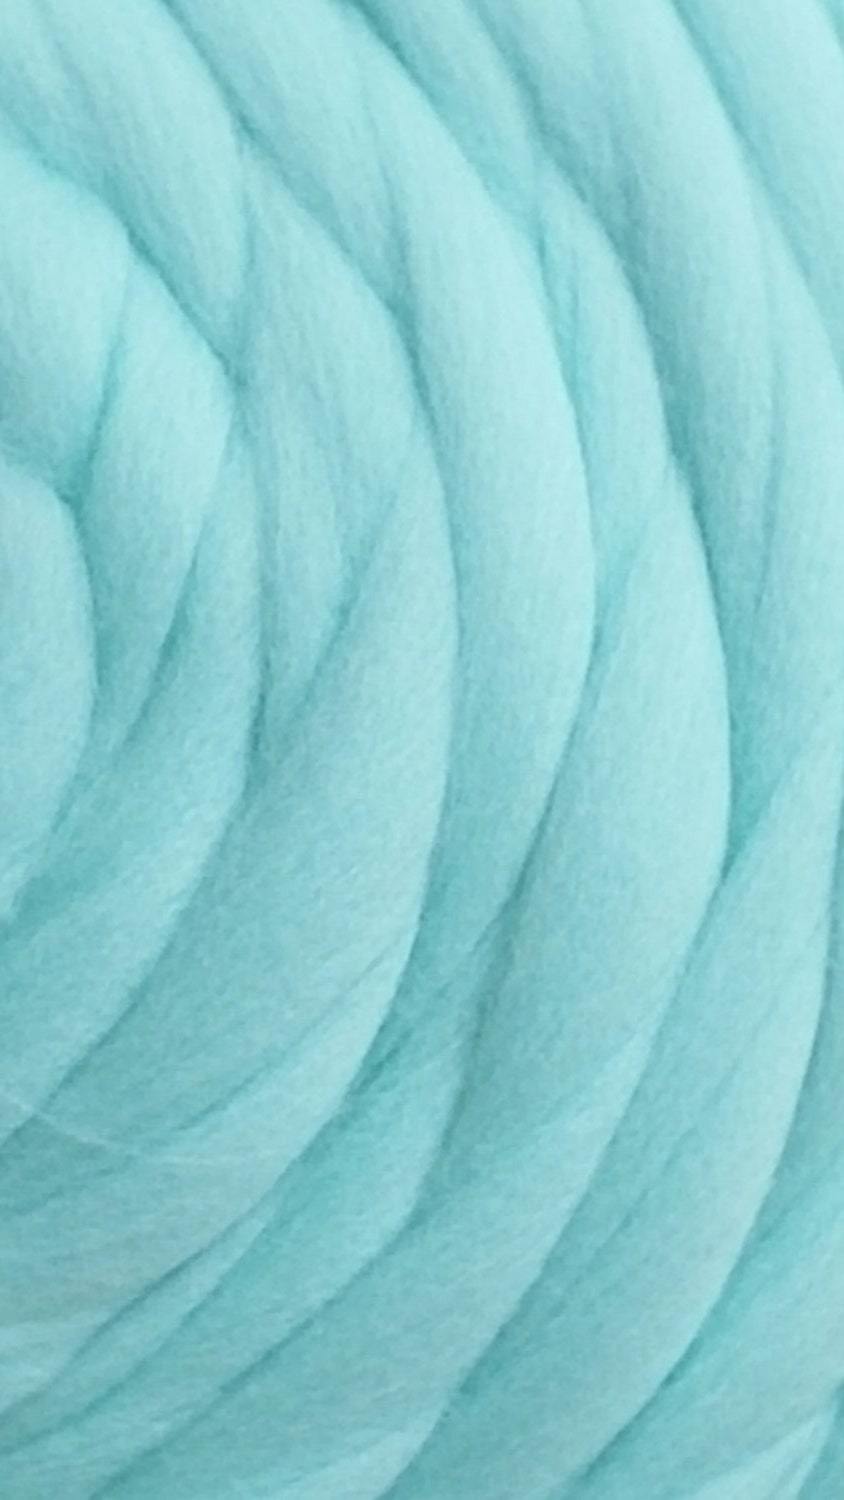 Frozen Blue Merino Wool Roving